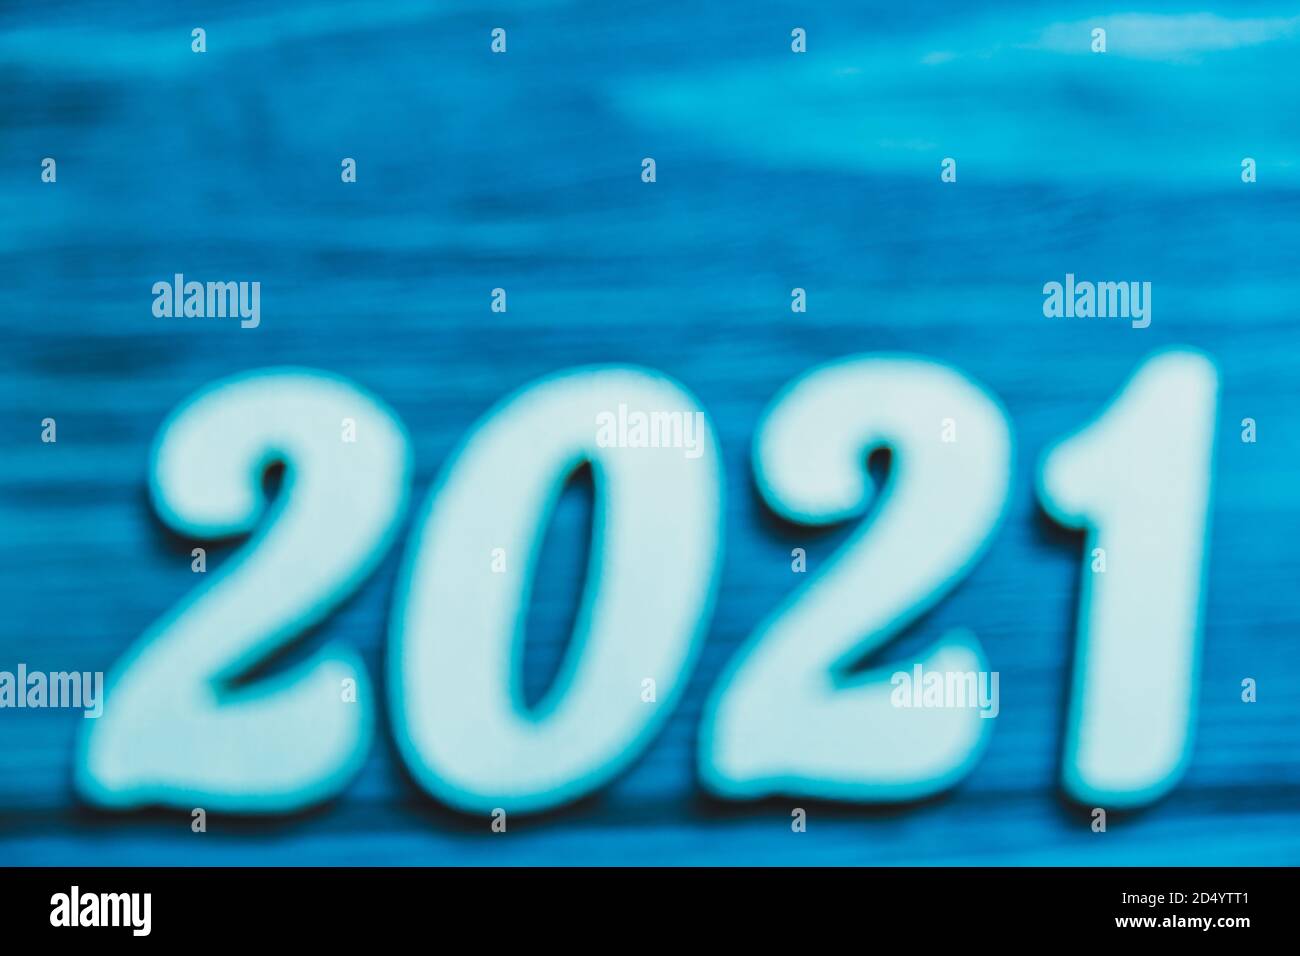 Les nombres bleus 2021 sont flous sur fond bleu. Le concept de l'inconnu, le mystère de l'année à venir. Bannière de Noël. Gros plan. Copier l'espace. Banque D'Images